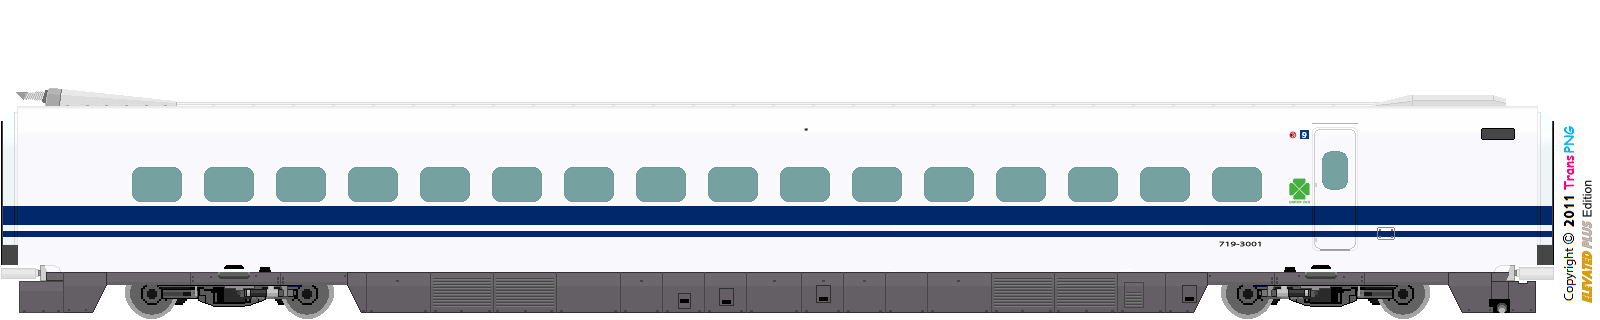 [9012] 西日本旅客鉄道 52288068720_ea2af4512c_o